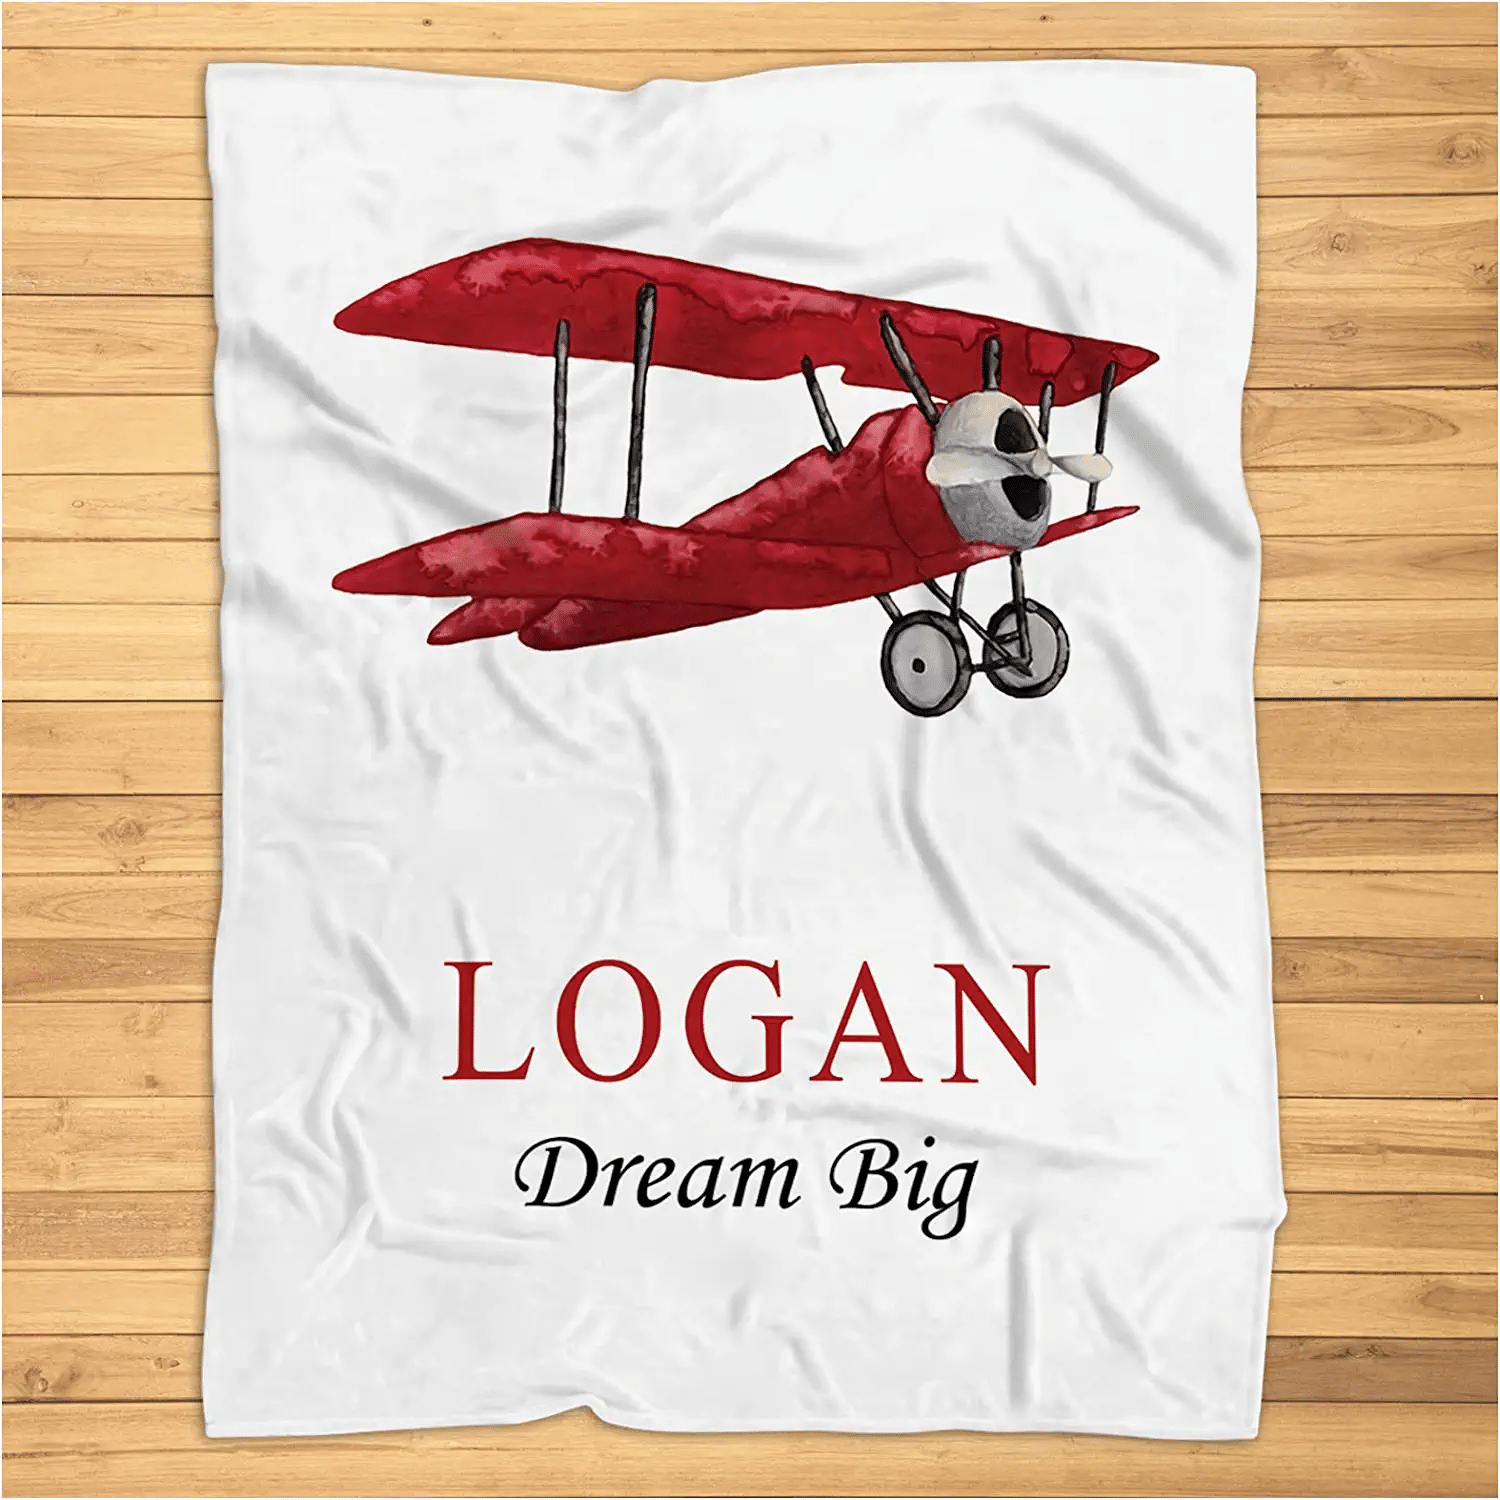 Airplane Blanket